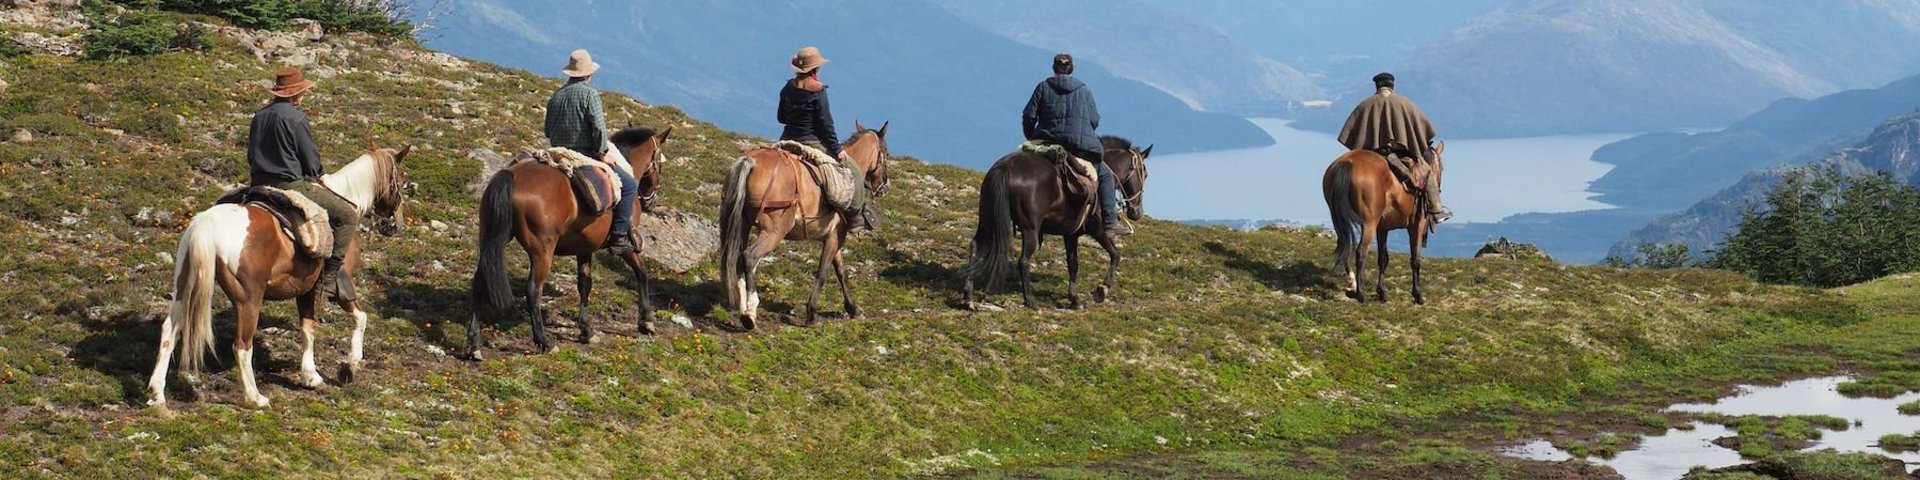 Reiter in Patagonien